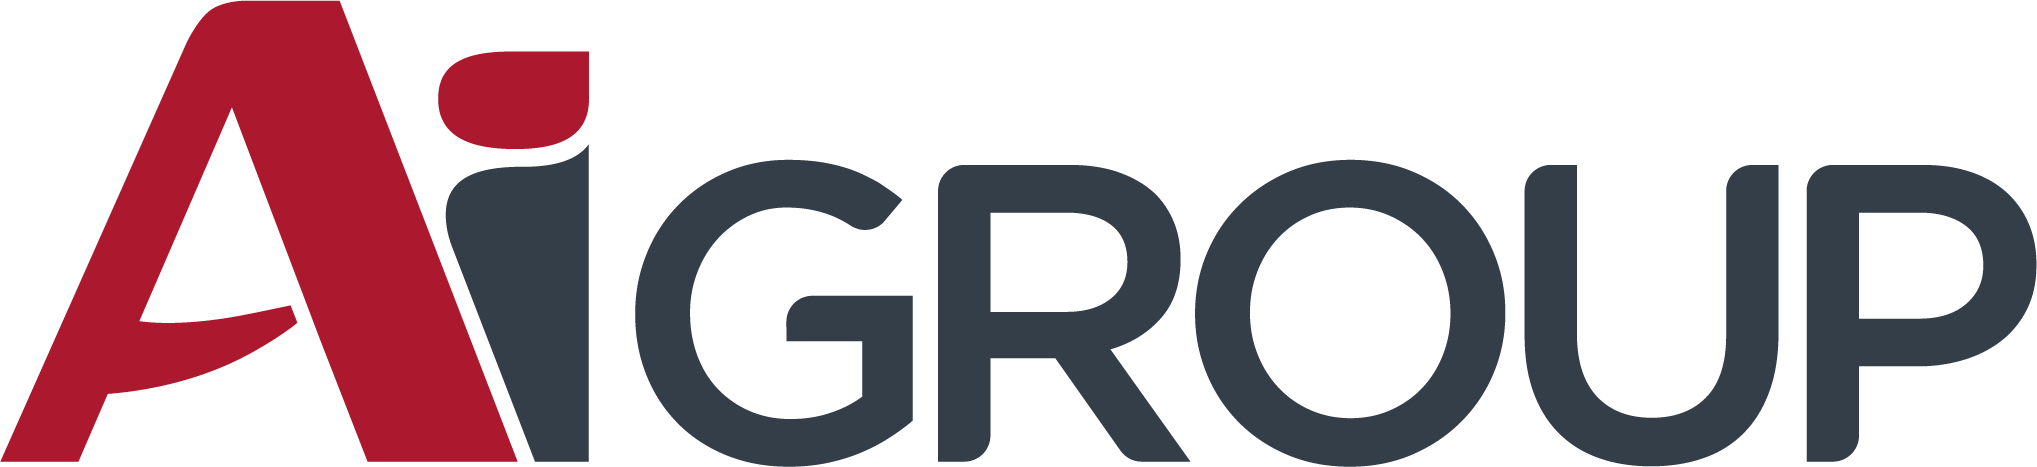 Vesco Group логотип. Союз Промышленная группа лого. RC Group логотип. Универсалгрупп логотип. Level group логотип